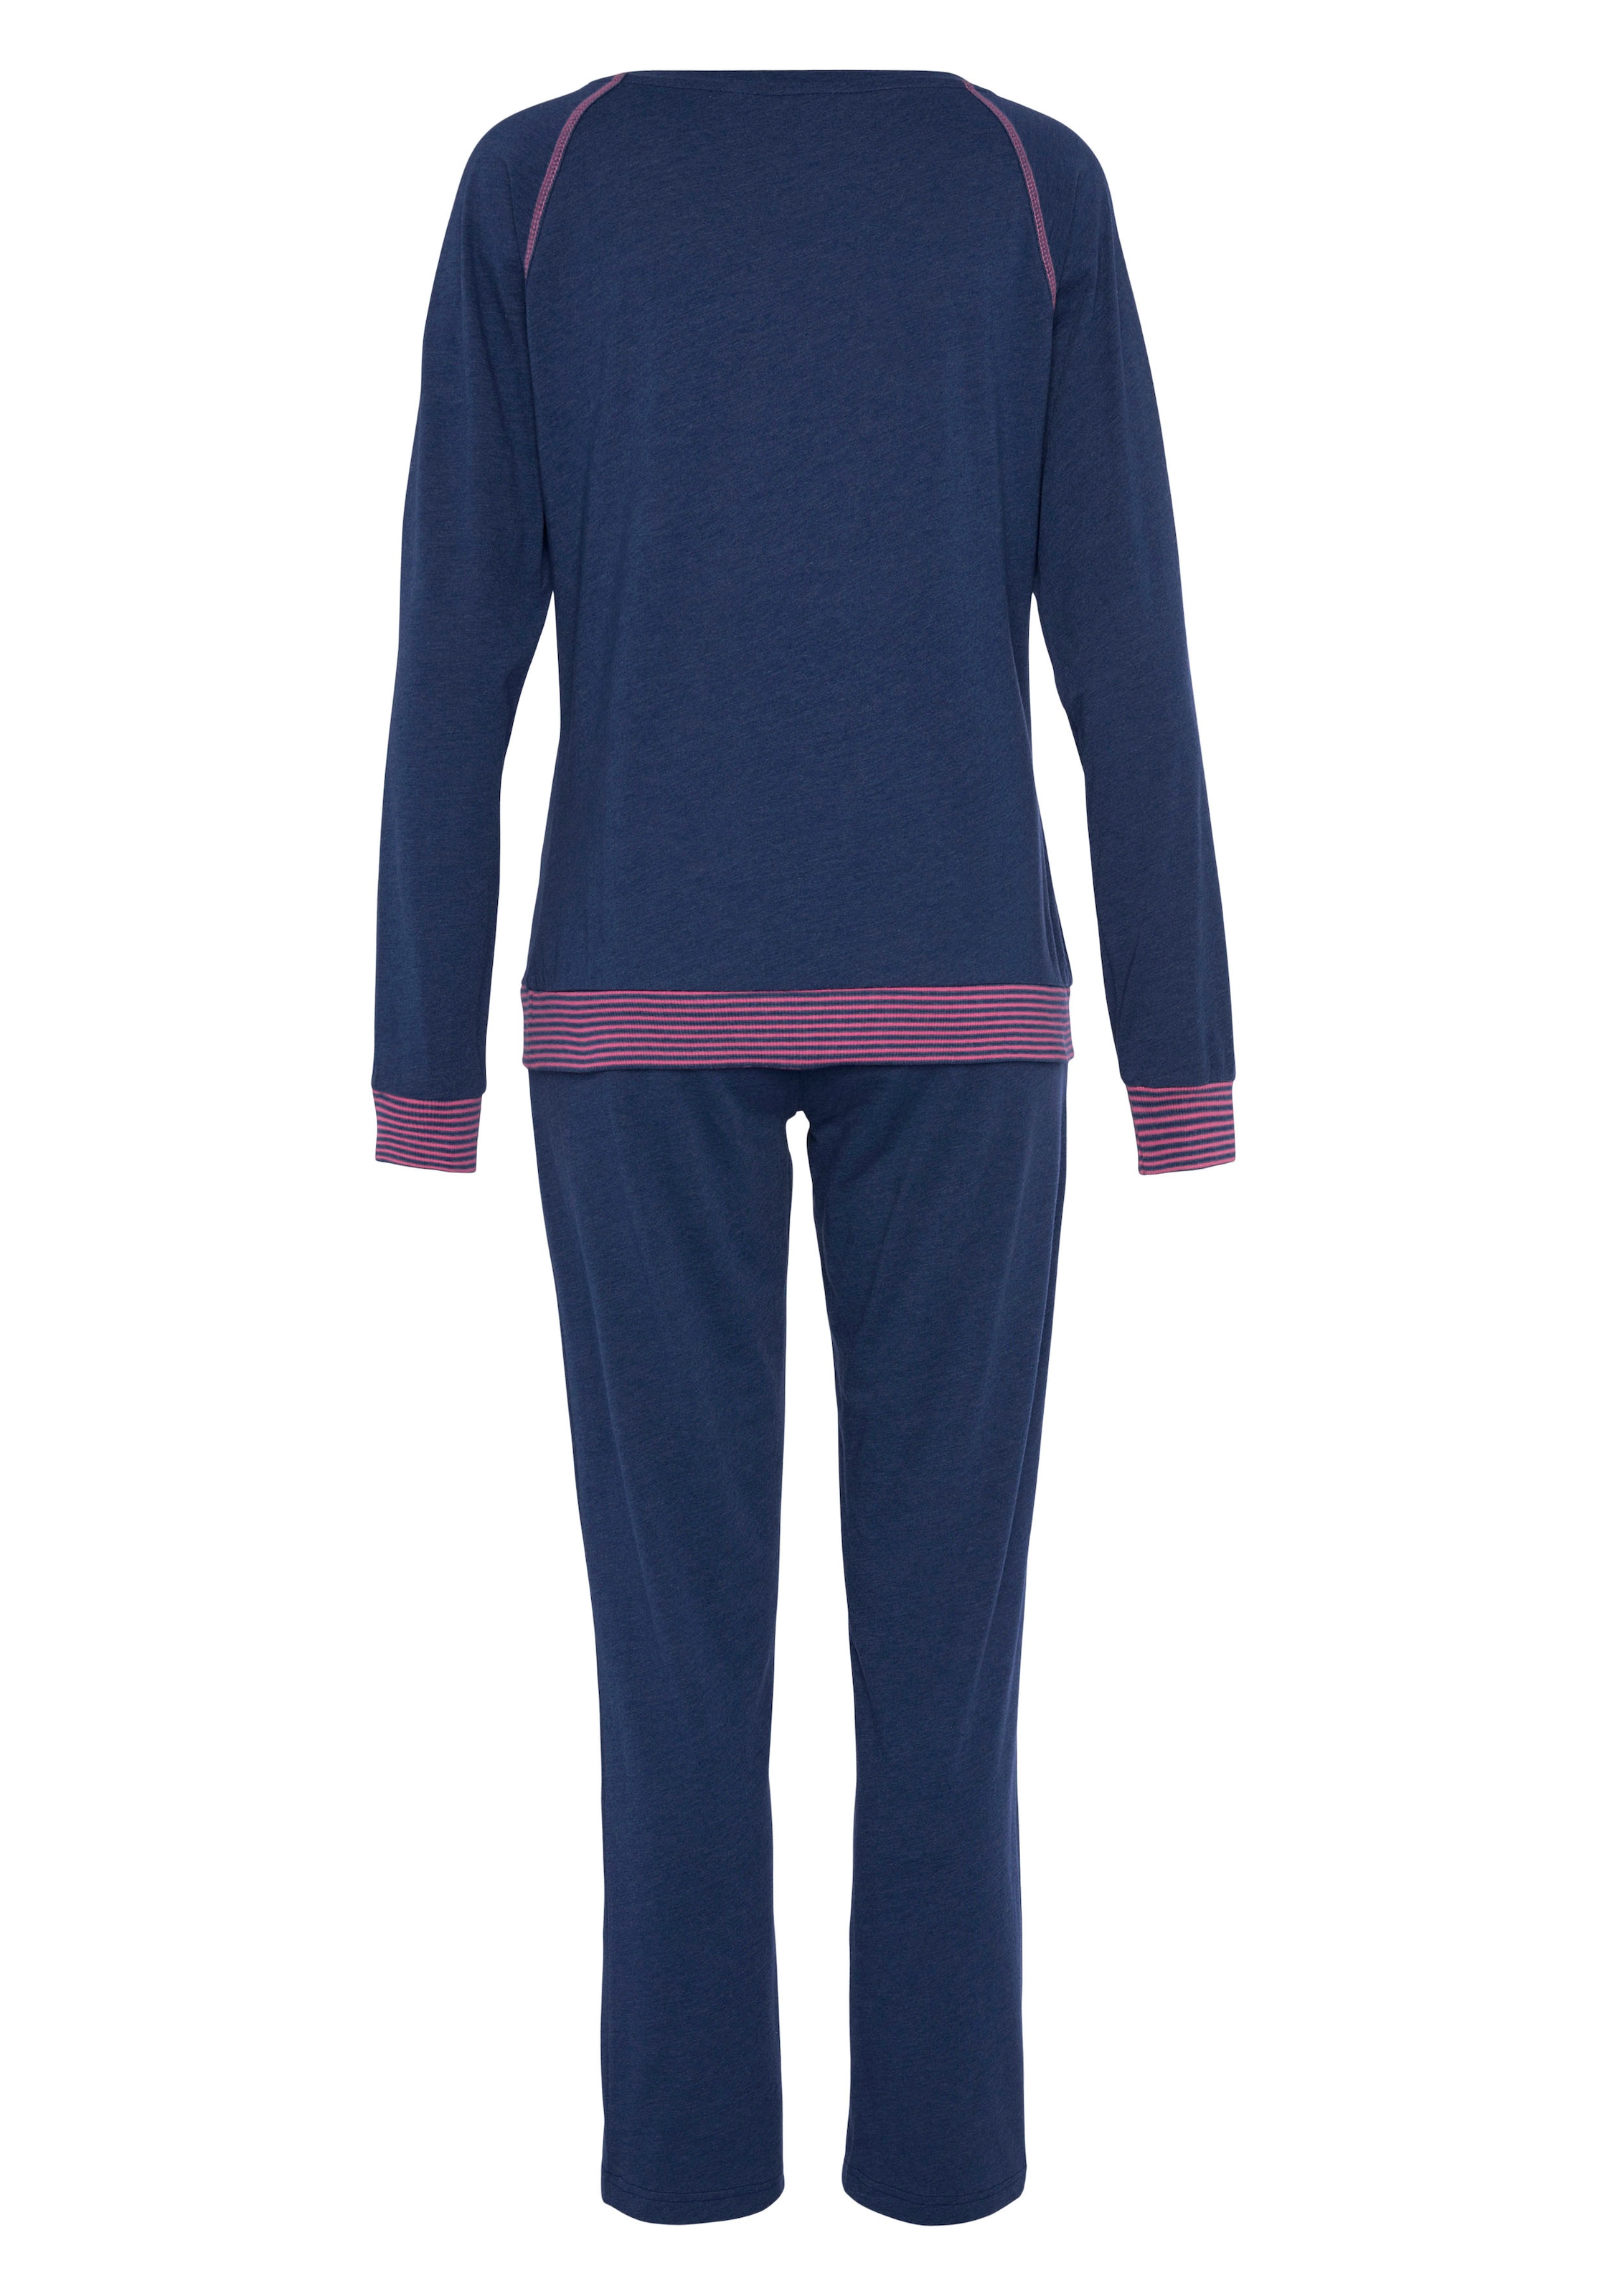 Vivance Dreams Pyjama, (2 tlg.), mit dekorativen Flatlock-Nähten in Neonfarben